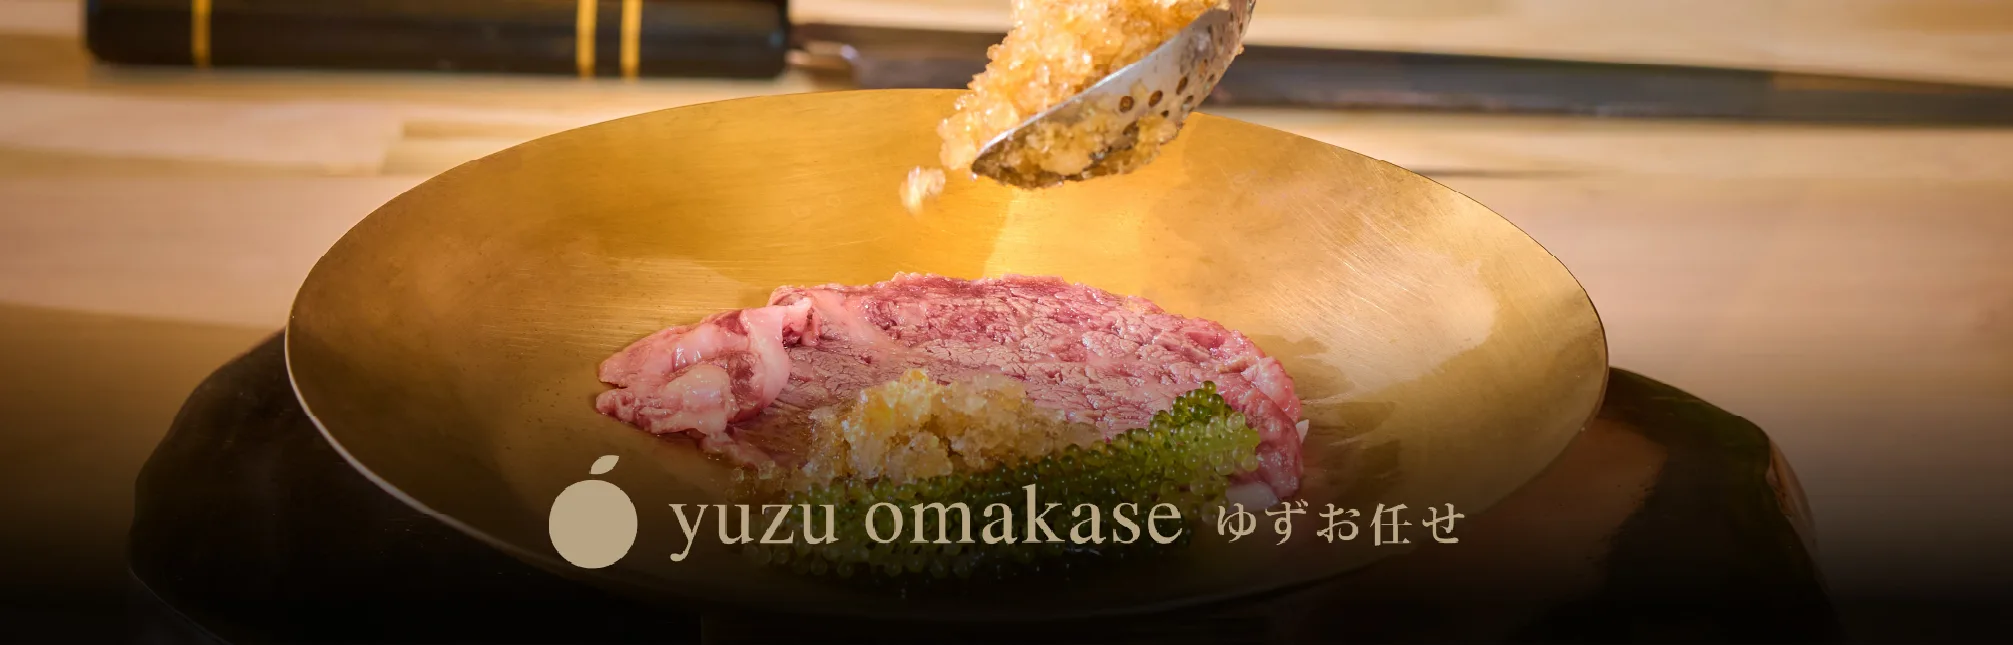 Exquisite Japanese Cuisine